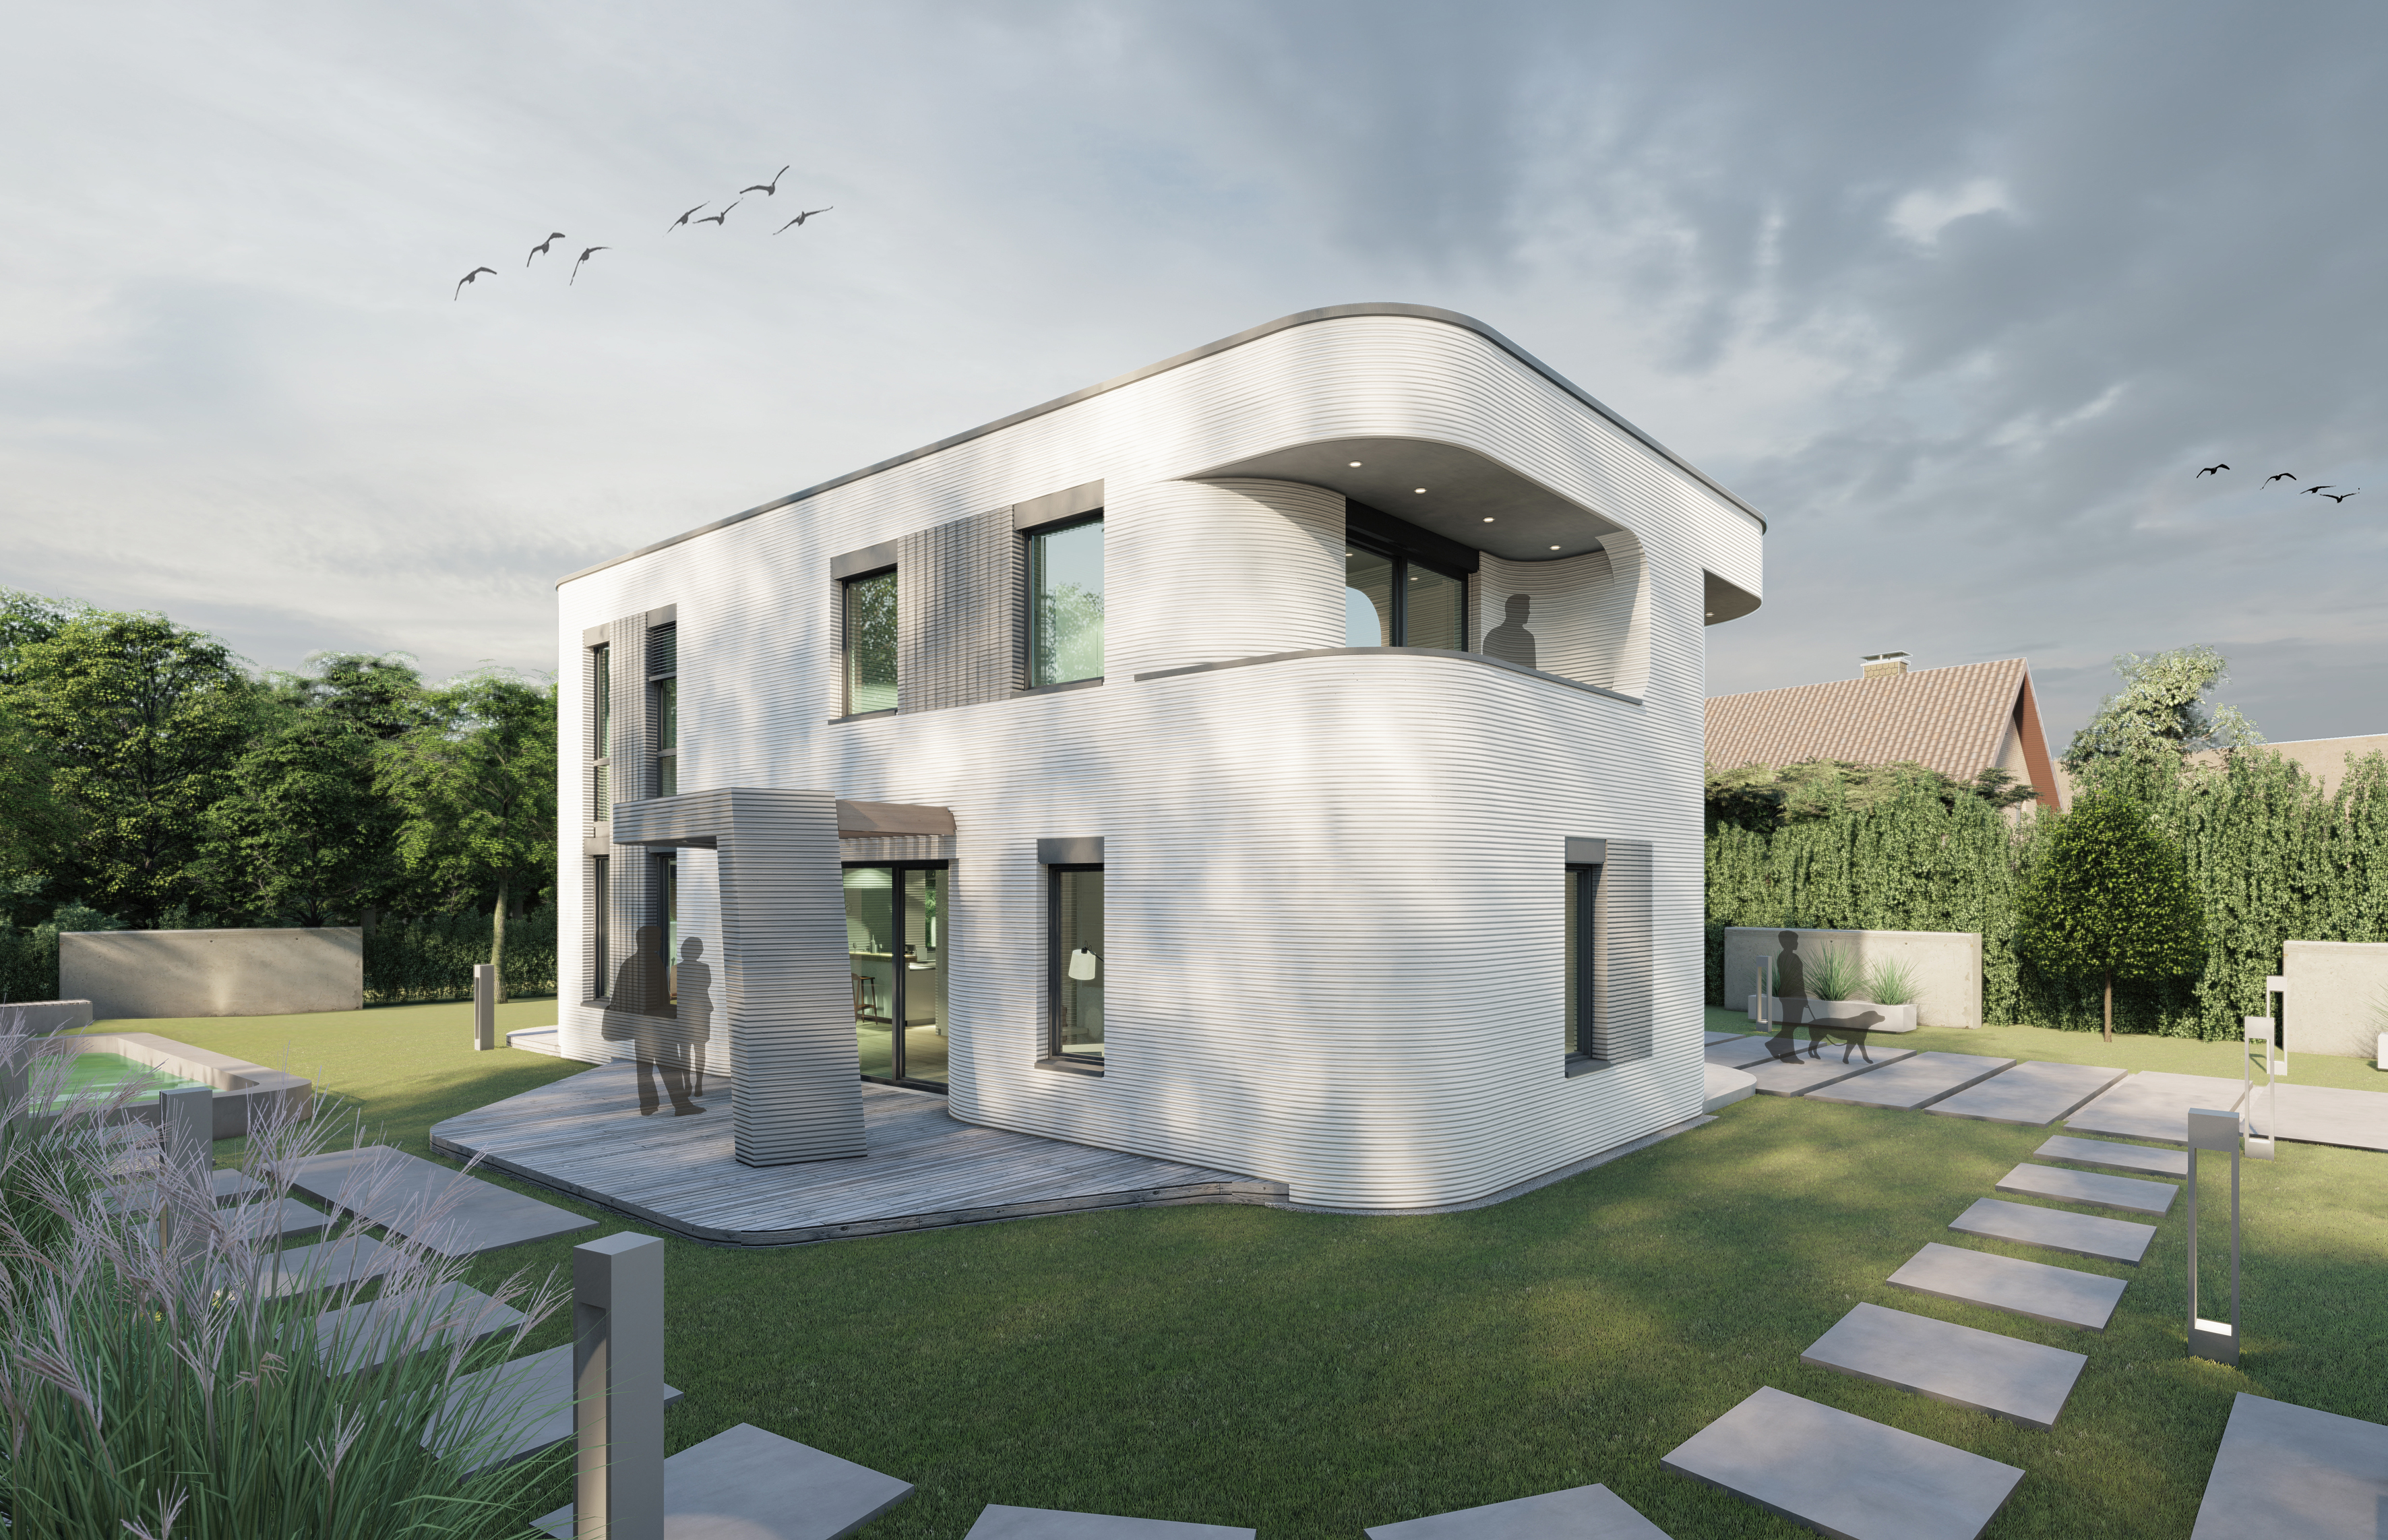 Eine Vision wird Realität: Das erste 3D-gedruckte Wohnhaus aus Beton in Deutschland. Das Hightech-Material „i.tech 3D“ wurde von dem Forscherteam von HeidelbergCement speziell für den 3D-Druck entwickelt und ist für die vielseitige Verwendung mit verschiedenen 3D-Druckertypen geeignet.